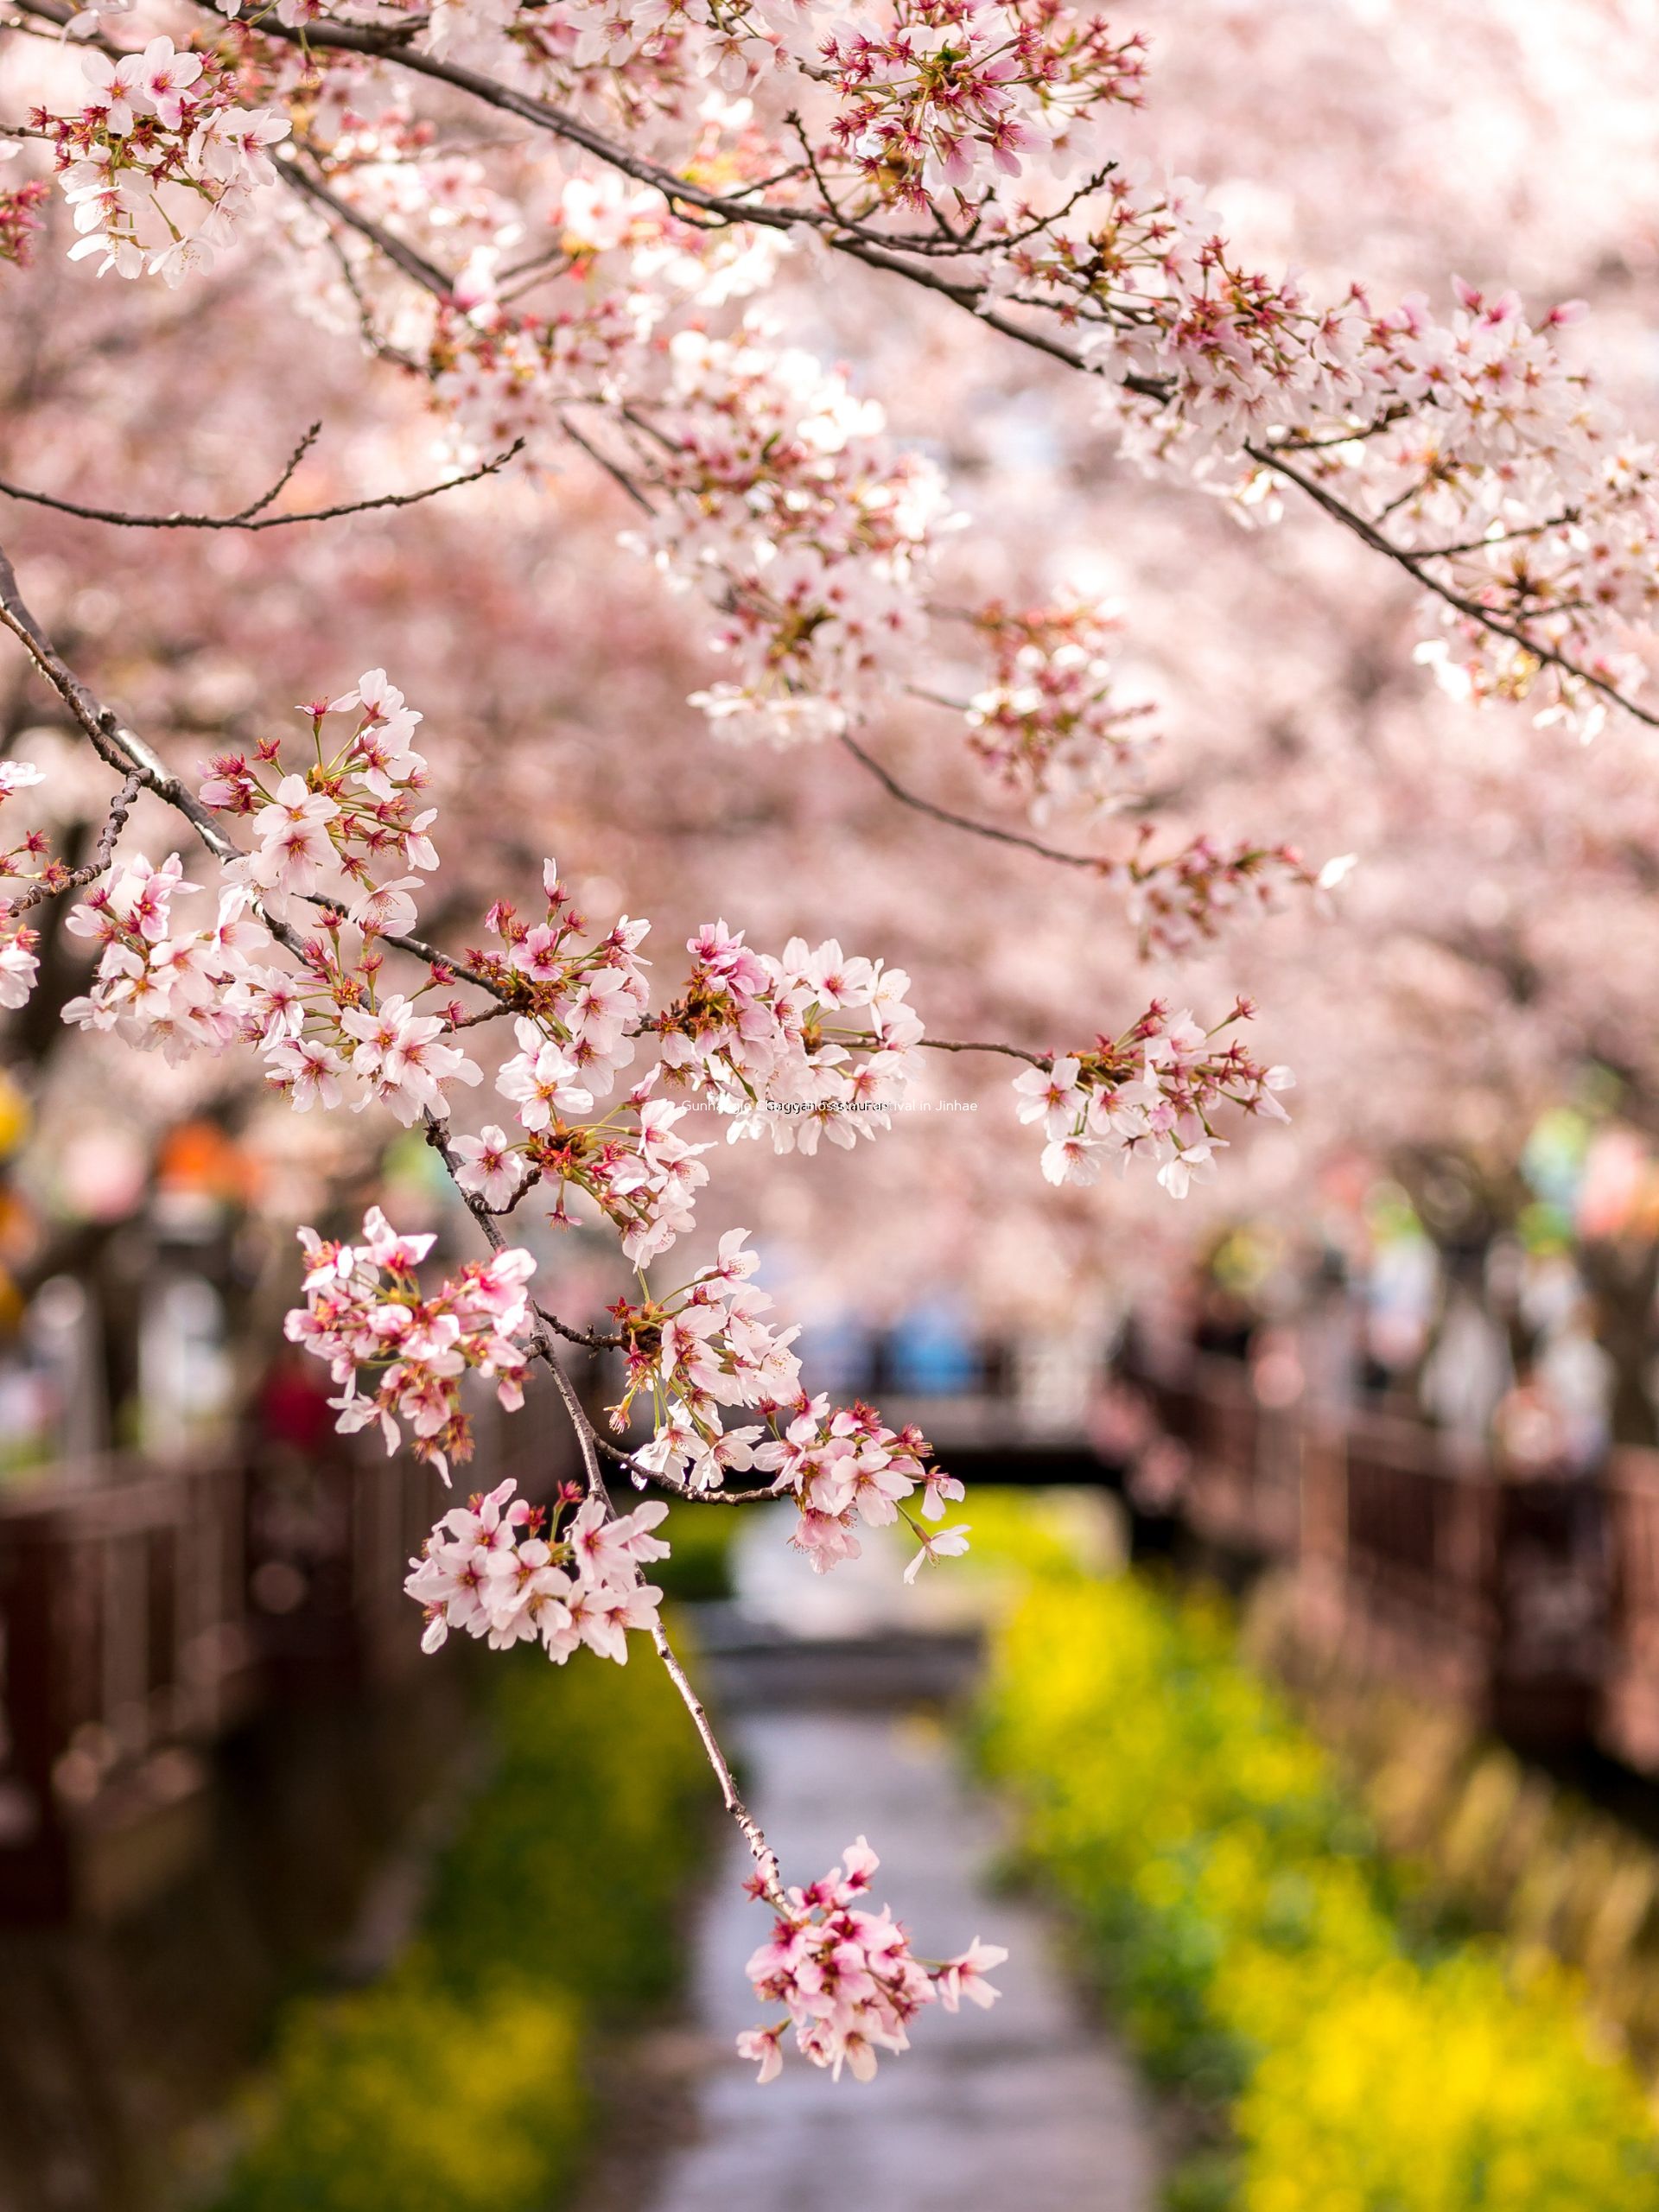 Gunhangje Cherry Blossom Festival in Jinhae